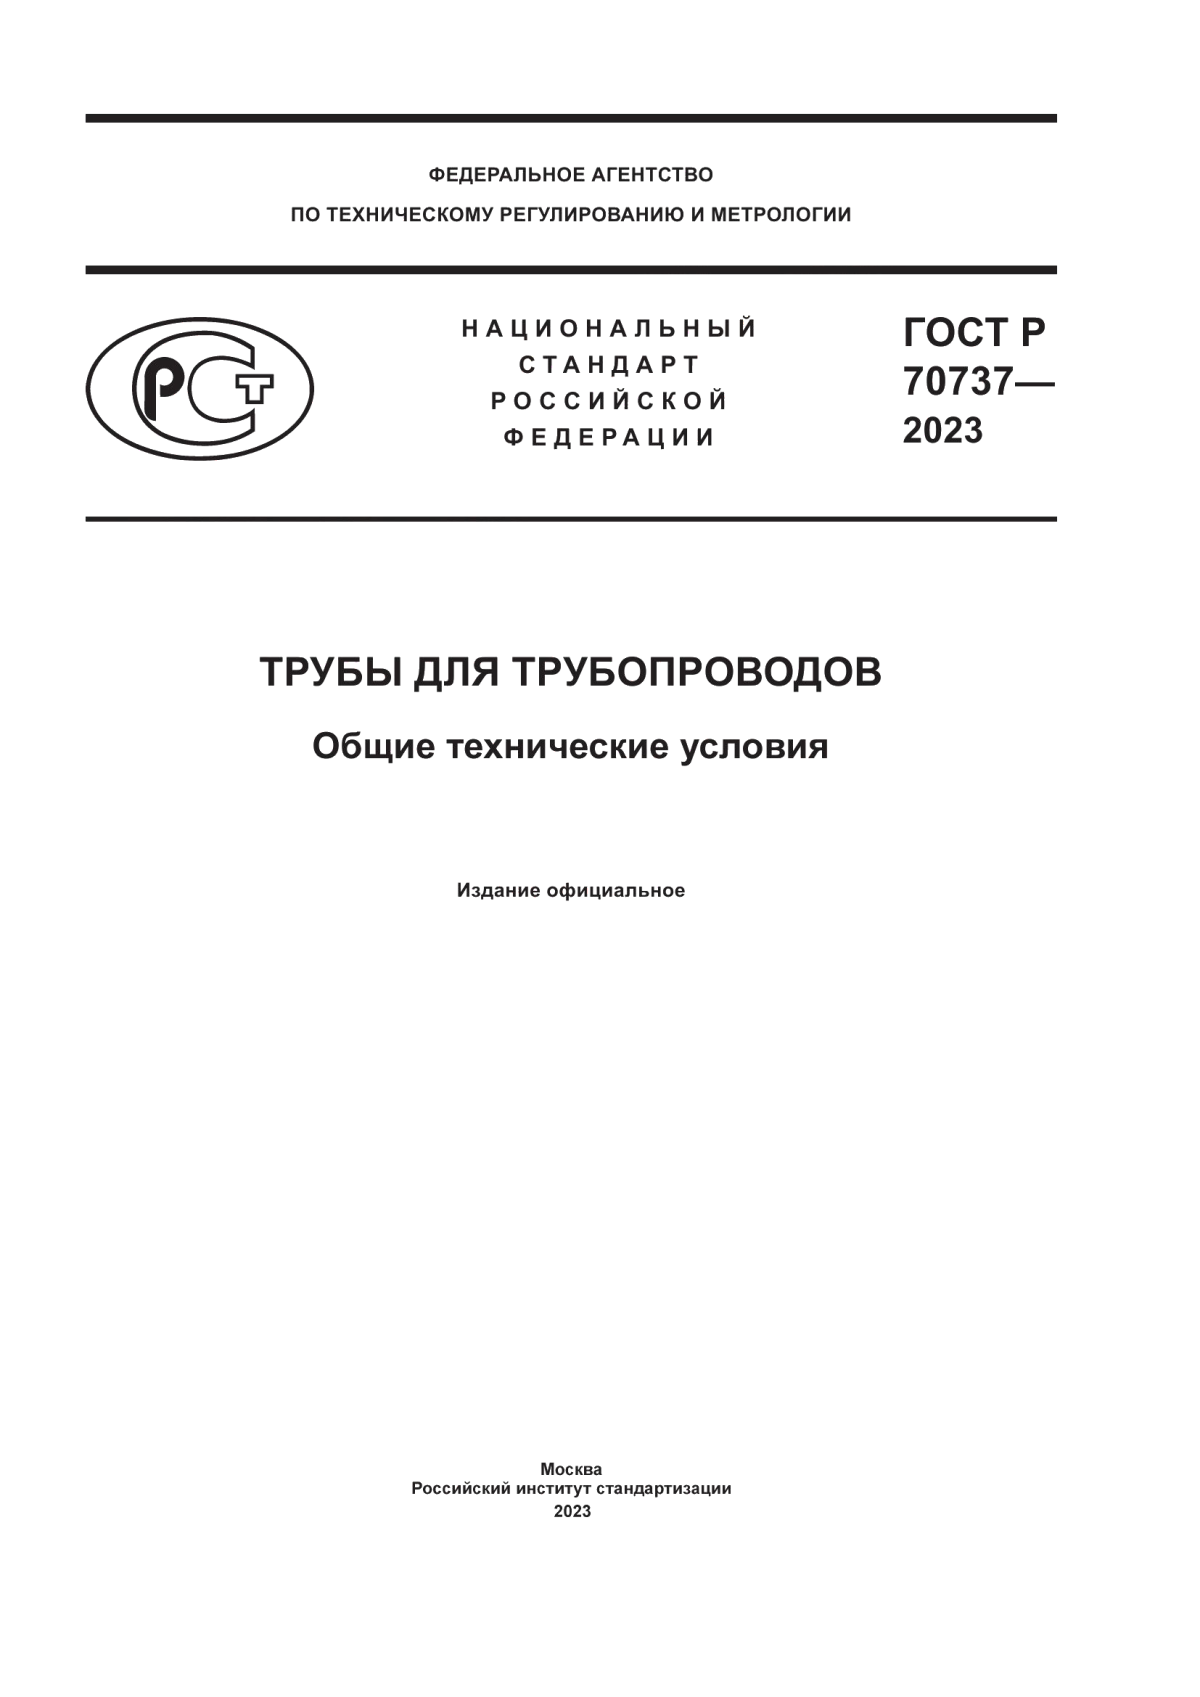 ГОСТ Р 70737-2023 Трубы для трубопроводов. Общие технические условия